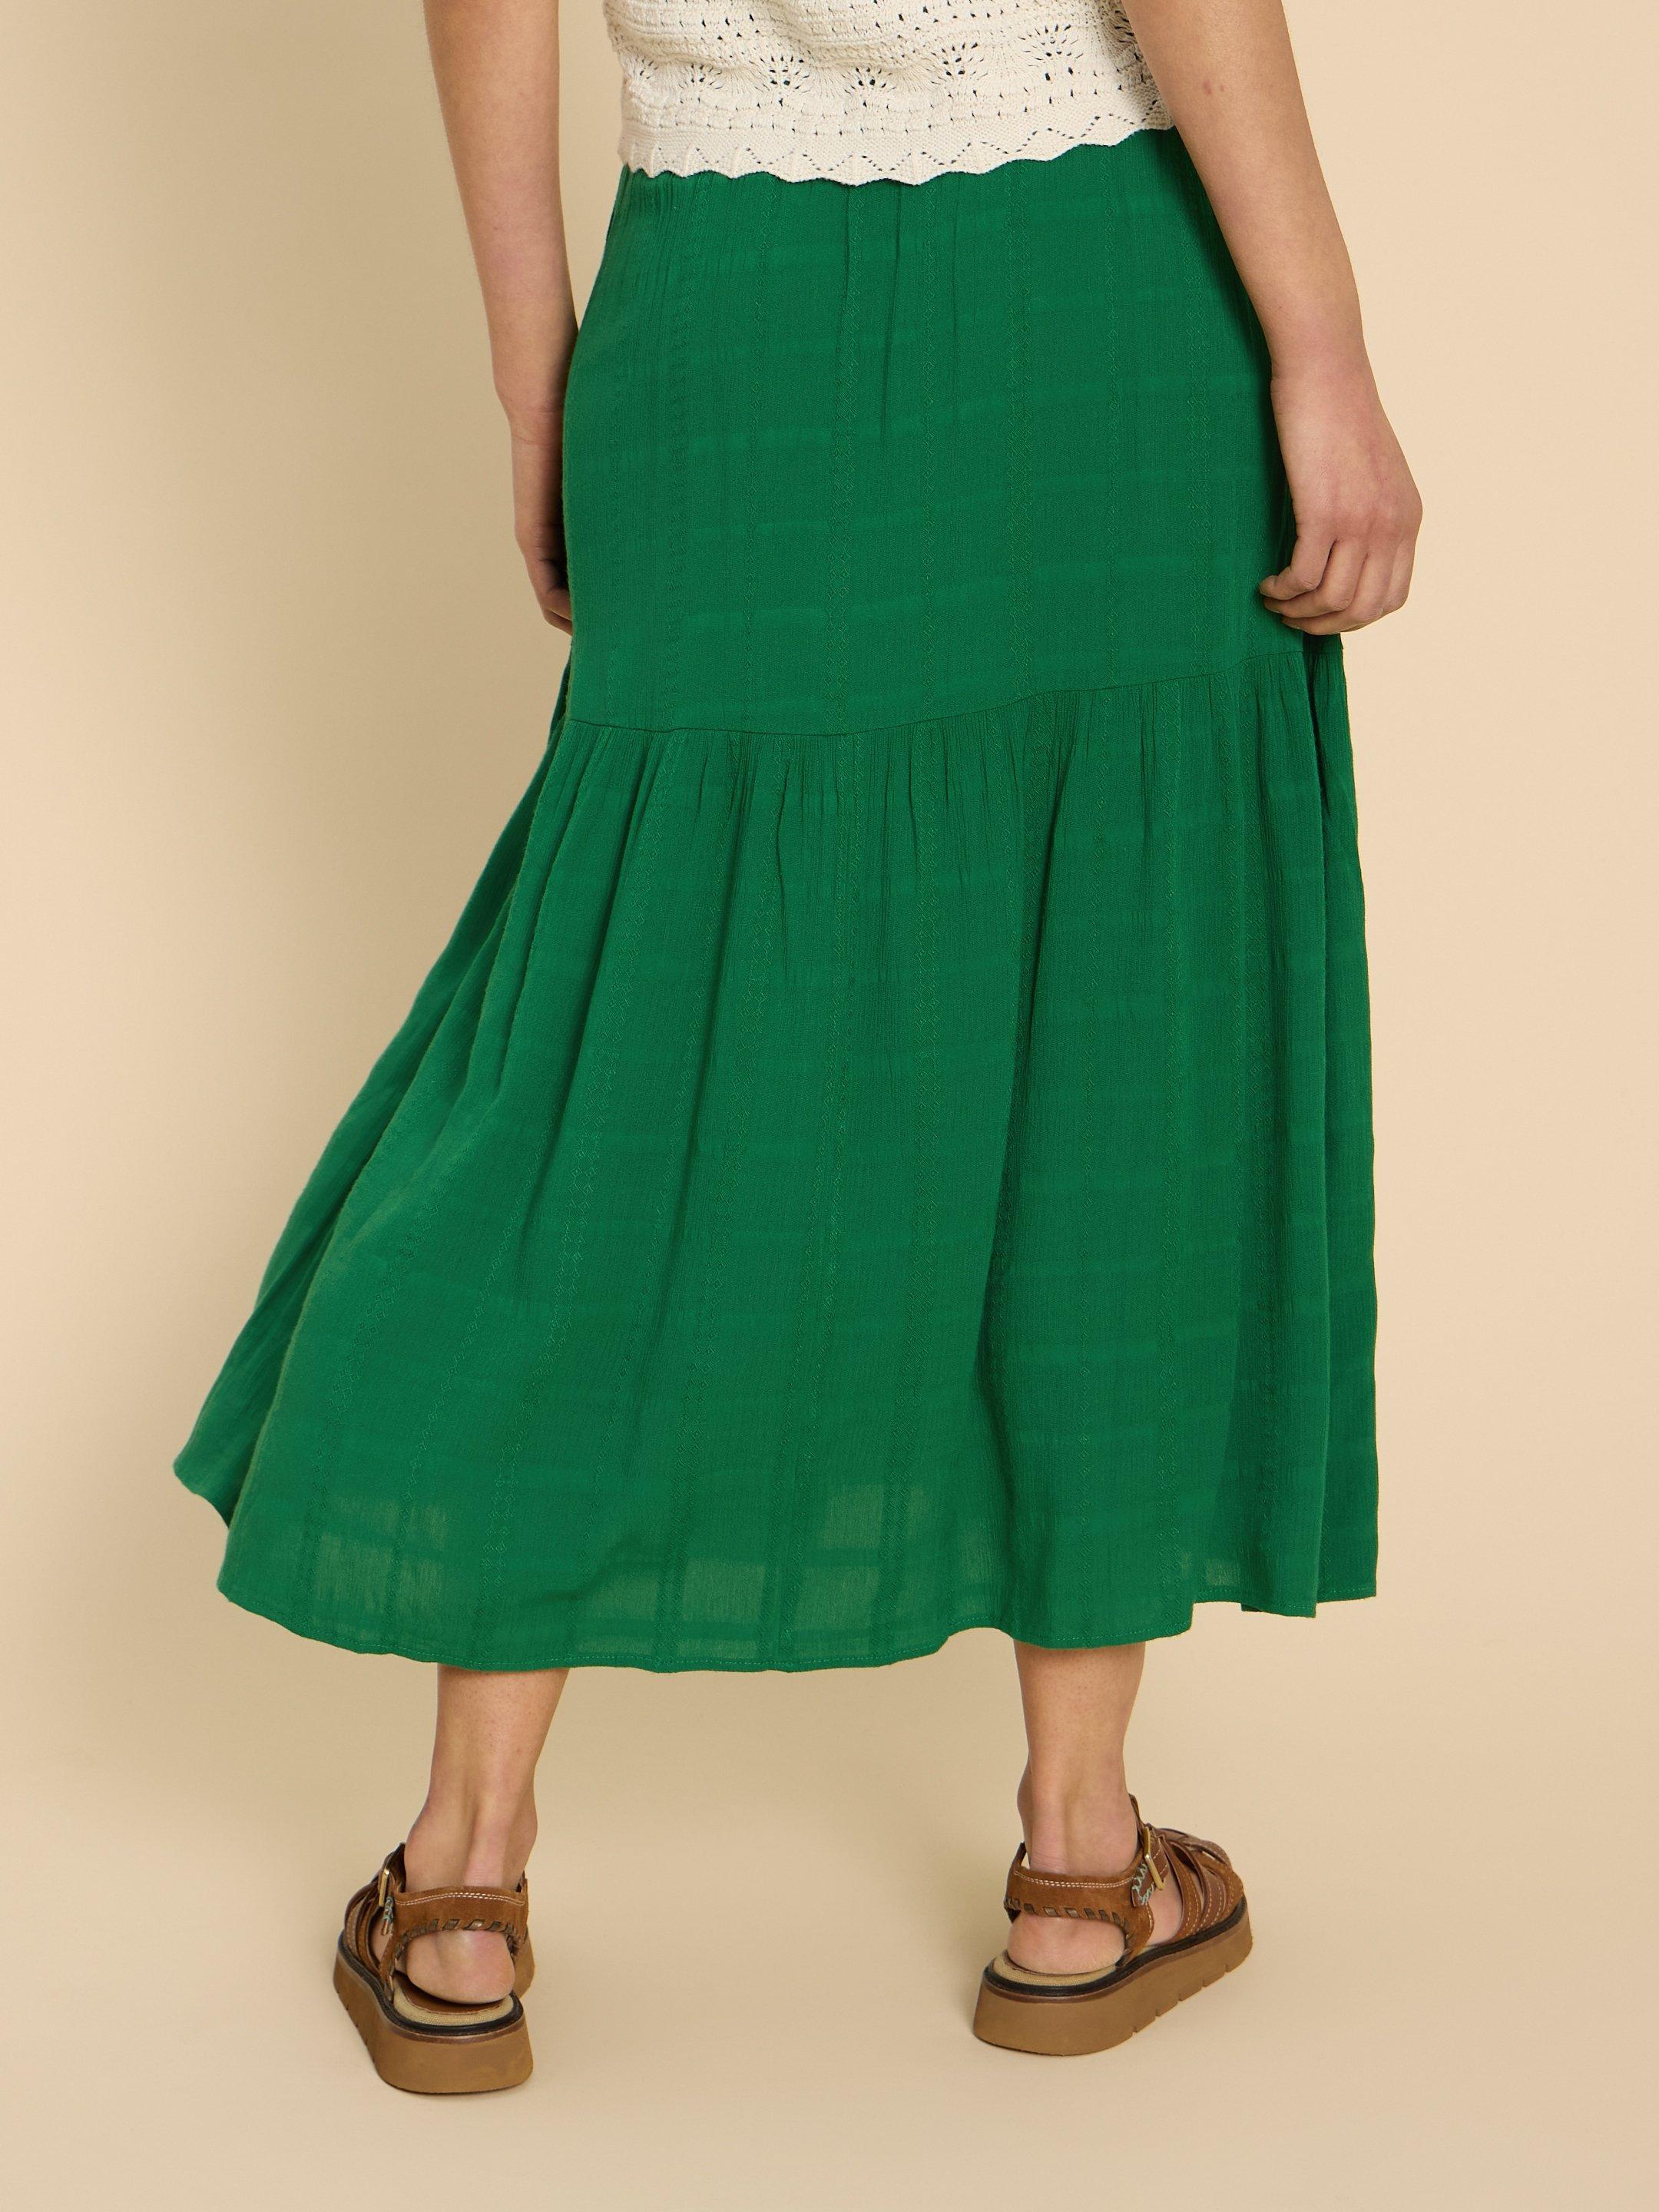 Phoebe Maxi Skirt in BRT GREEN - MODEL BACK